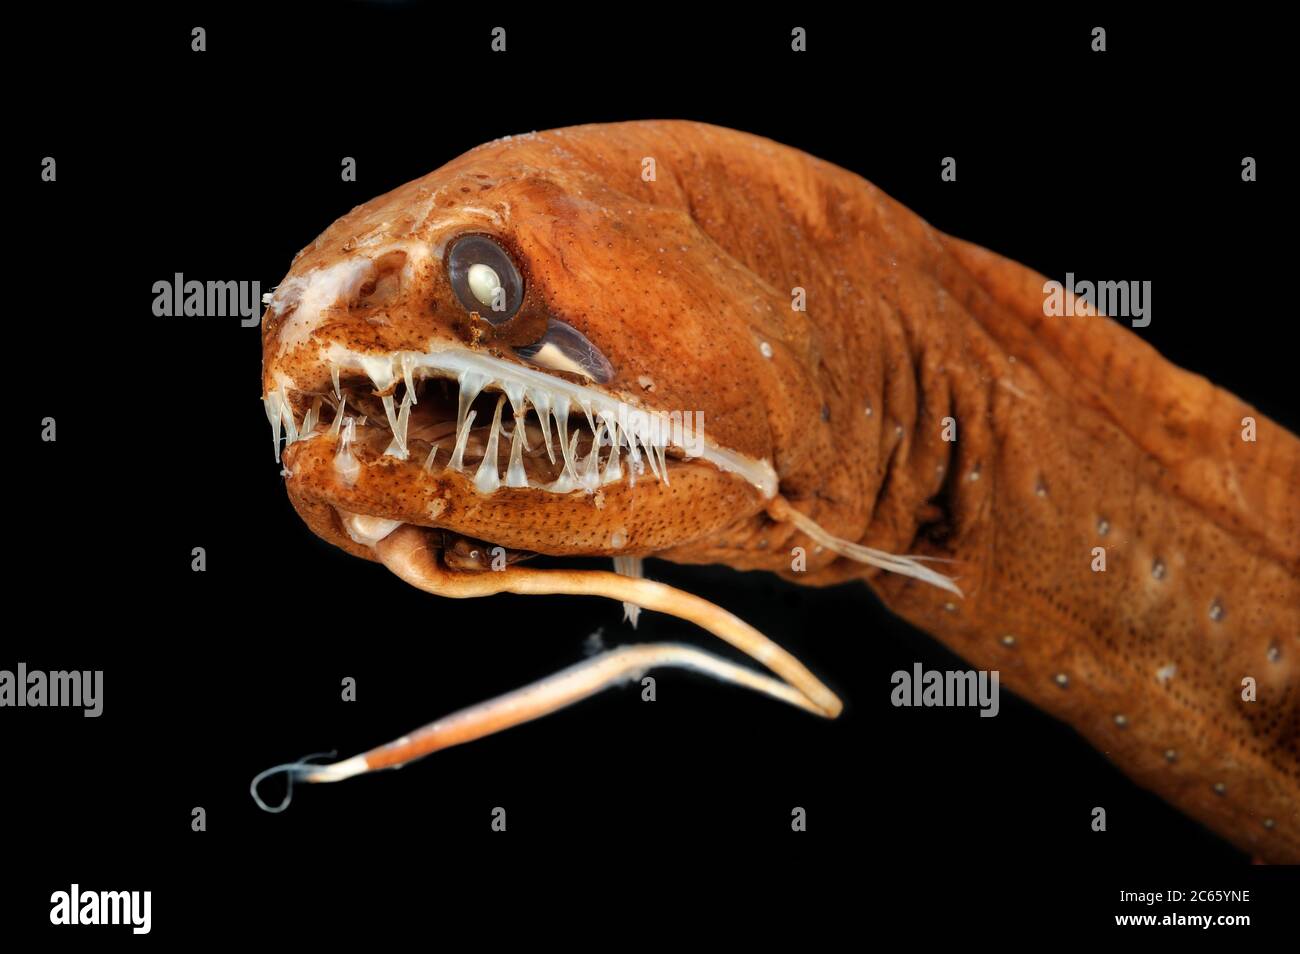 Le dragonfish noir sans écailles (Melanostomias melanops) est un poisson marin mince, jusqu'à 30 cm de long. Il présente un processus charnel de bioluminescence à son menton, utilisé pour attirer les proies à portée de la bouche fortement dentée. Les organes émettant de la lumière sont disposés le long de la partie inférieure de son corps et sous l'œil. On le trouve dans l'Atlantique et l'Indo-Pacifique. Spécimen conservé. La photo a été prise en coopération avec l'Université du Musée zoologique de Hambourg. Banque D'Images